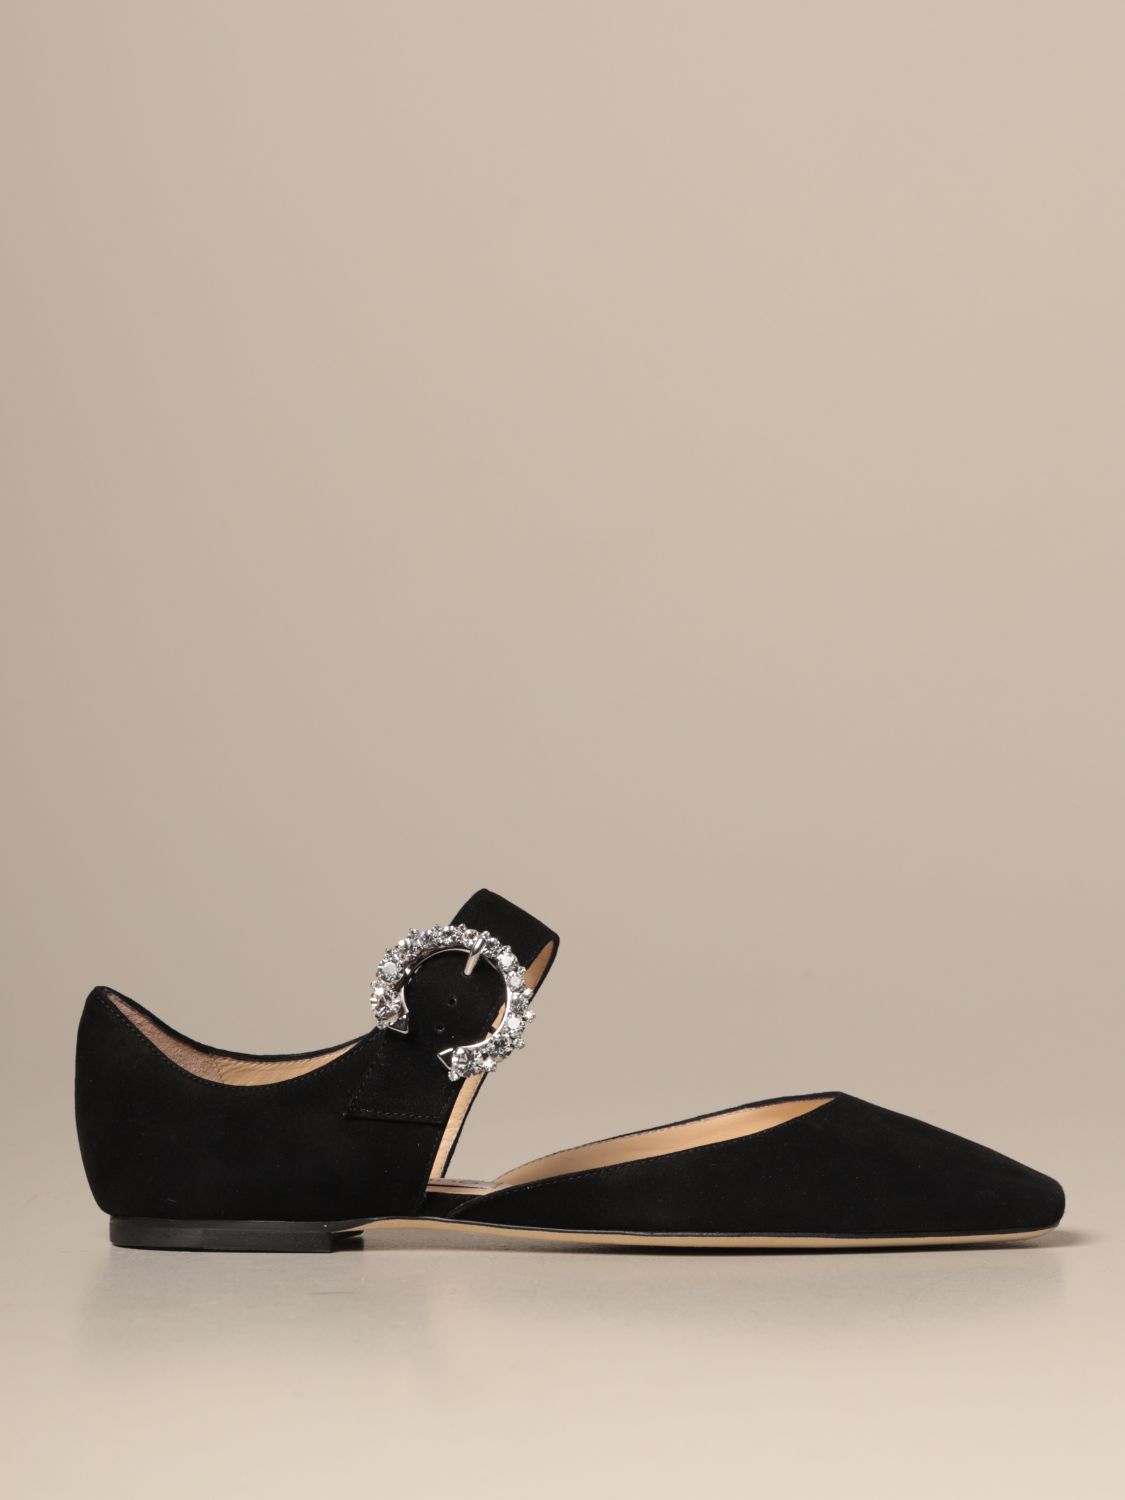 JIMMY CHOO: Gin Flat ballerina in suede - Black | Jimmy Choo flat shoes ...